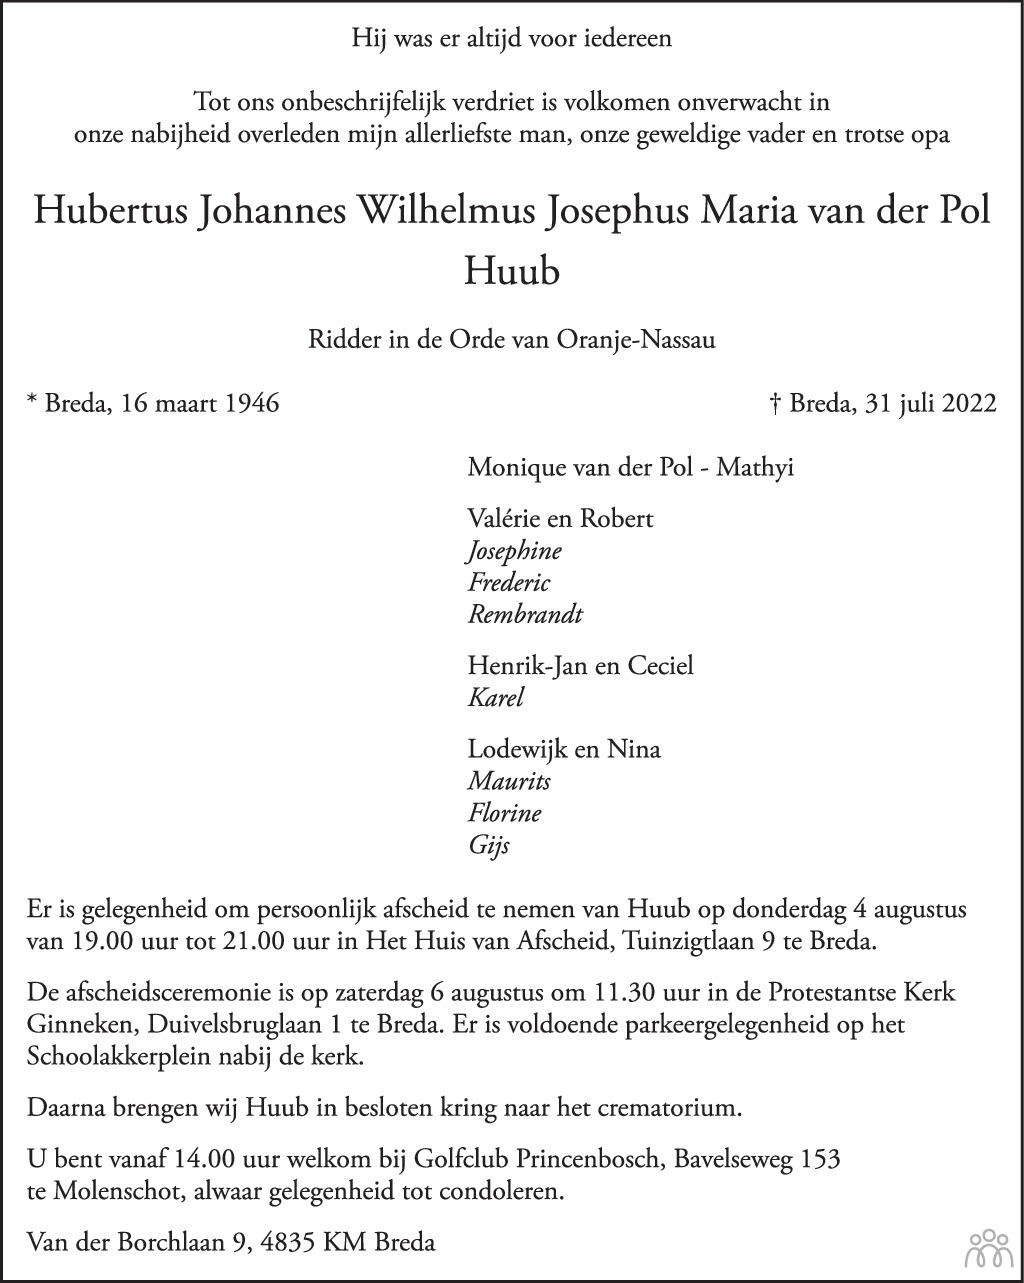 Overlijdensbericht van Hubertus Johannes Wilhelmus Josephus Maria (Huub) van der Pol in BN DeStem